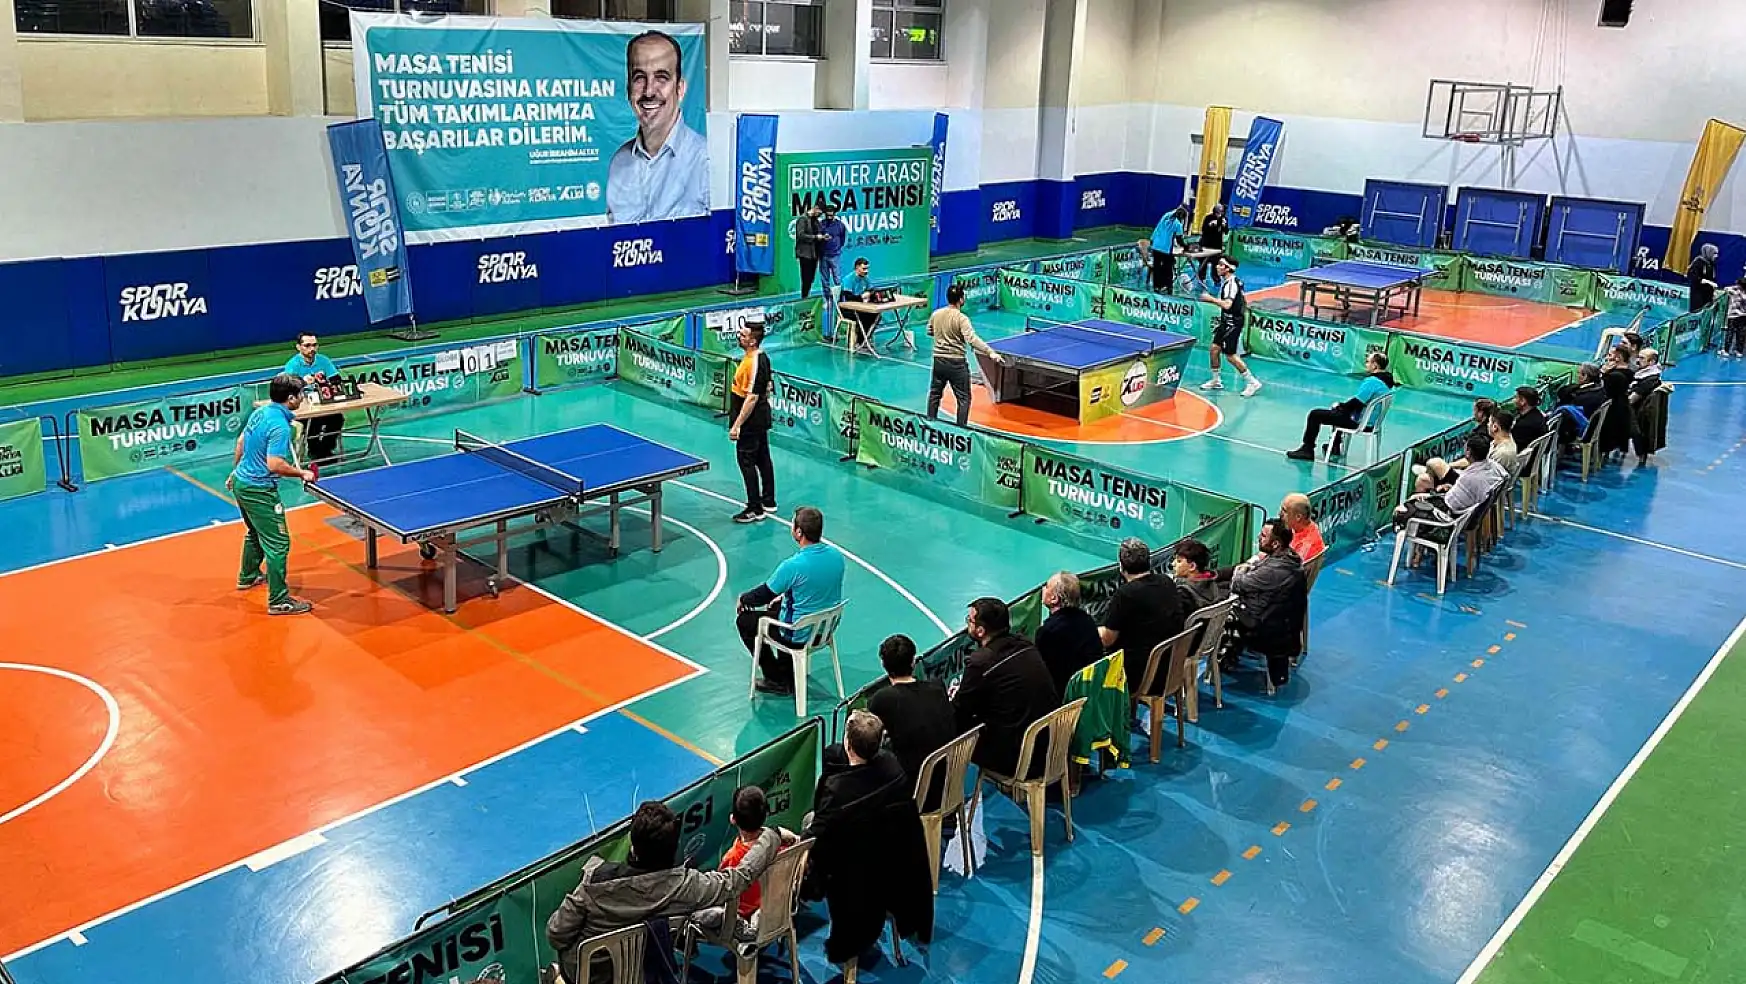 Konya Büyükşehir'in Masa Tenisi Turnuvası'nda büyük heyecan yaşandı